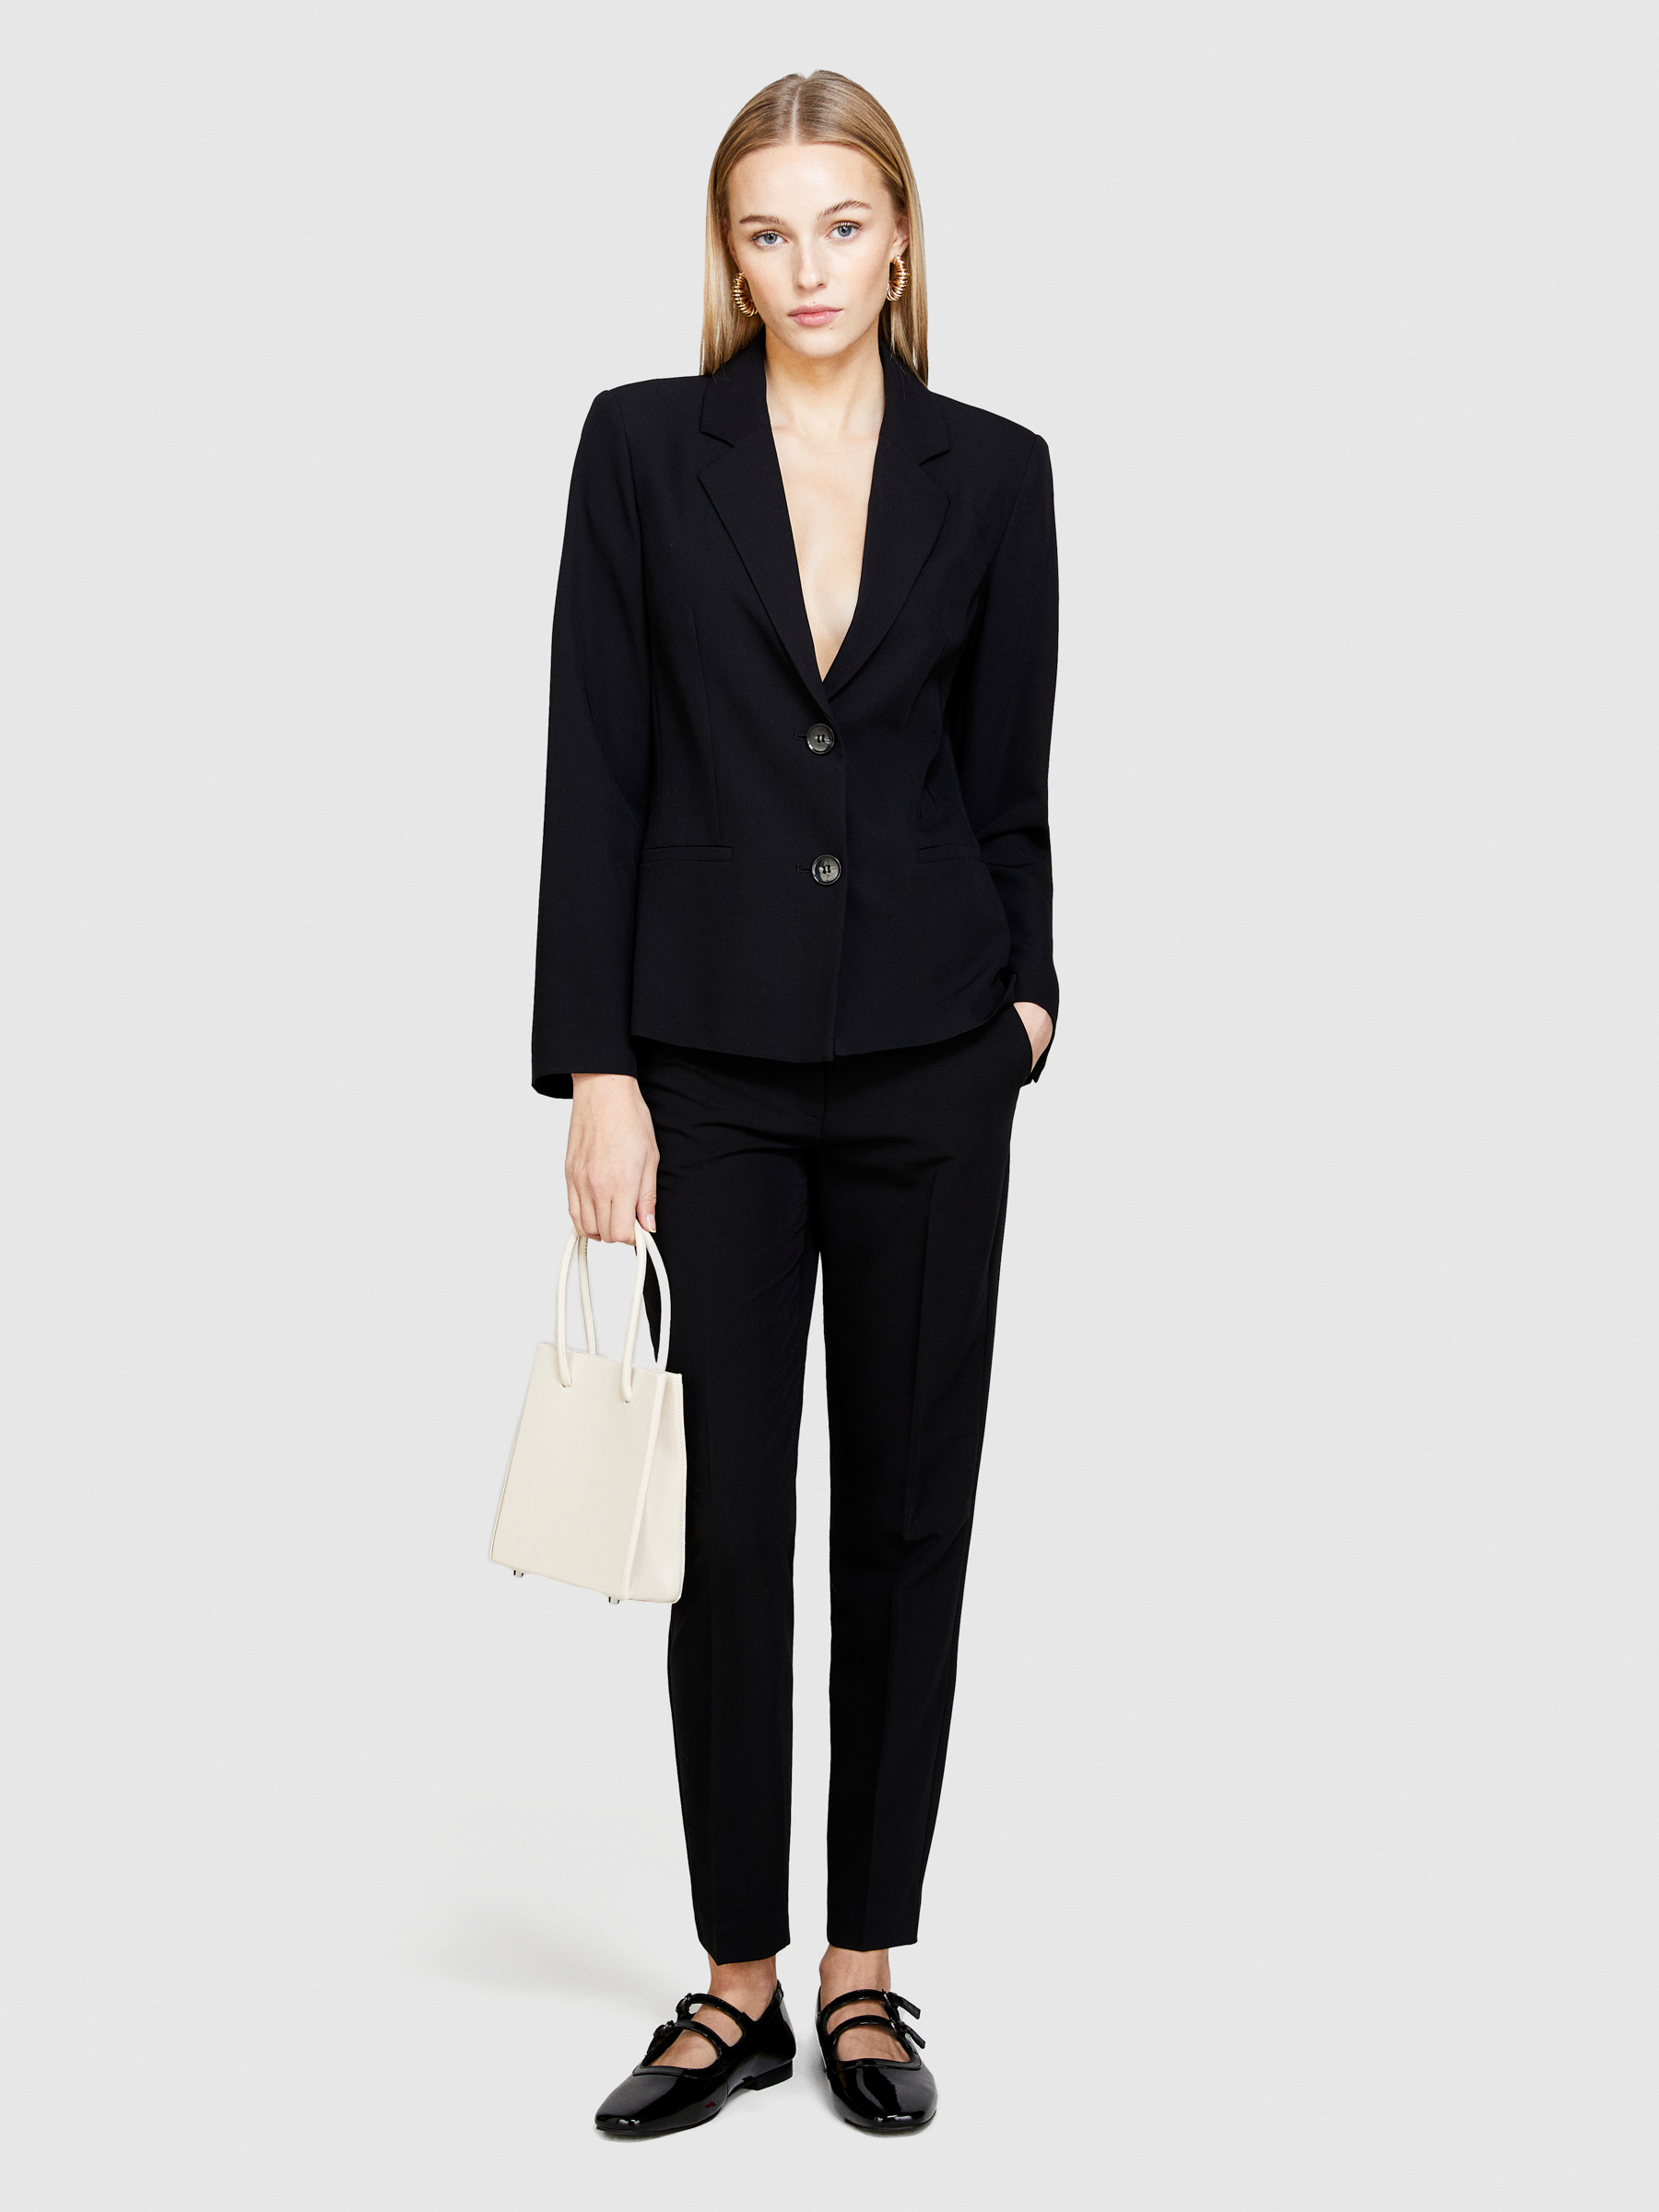 Sisley - Slim Fit Blazer, Woman, Black, Size: 46